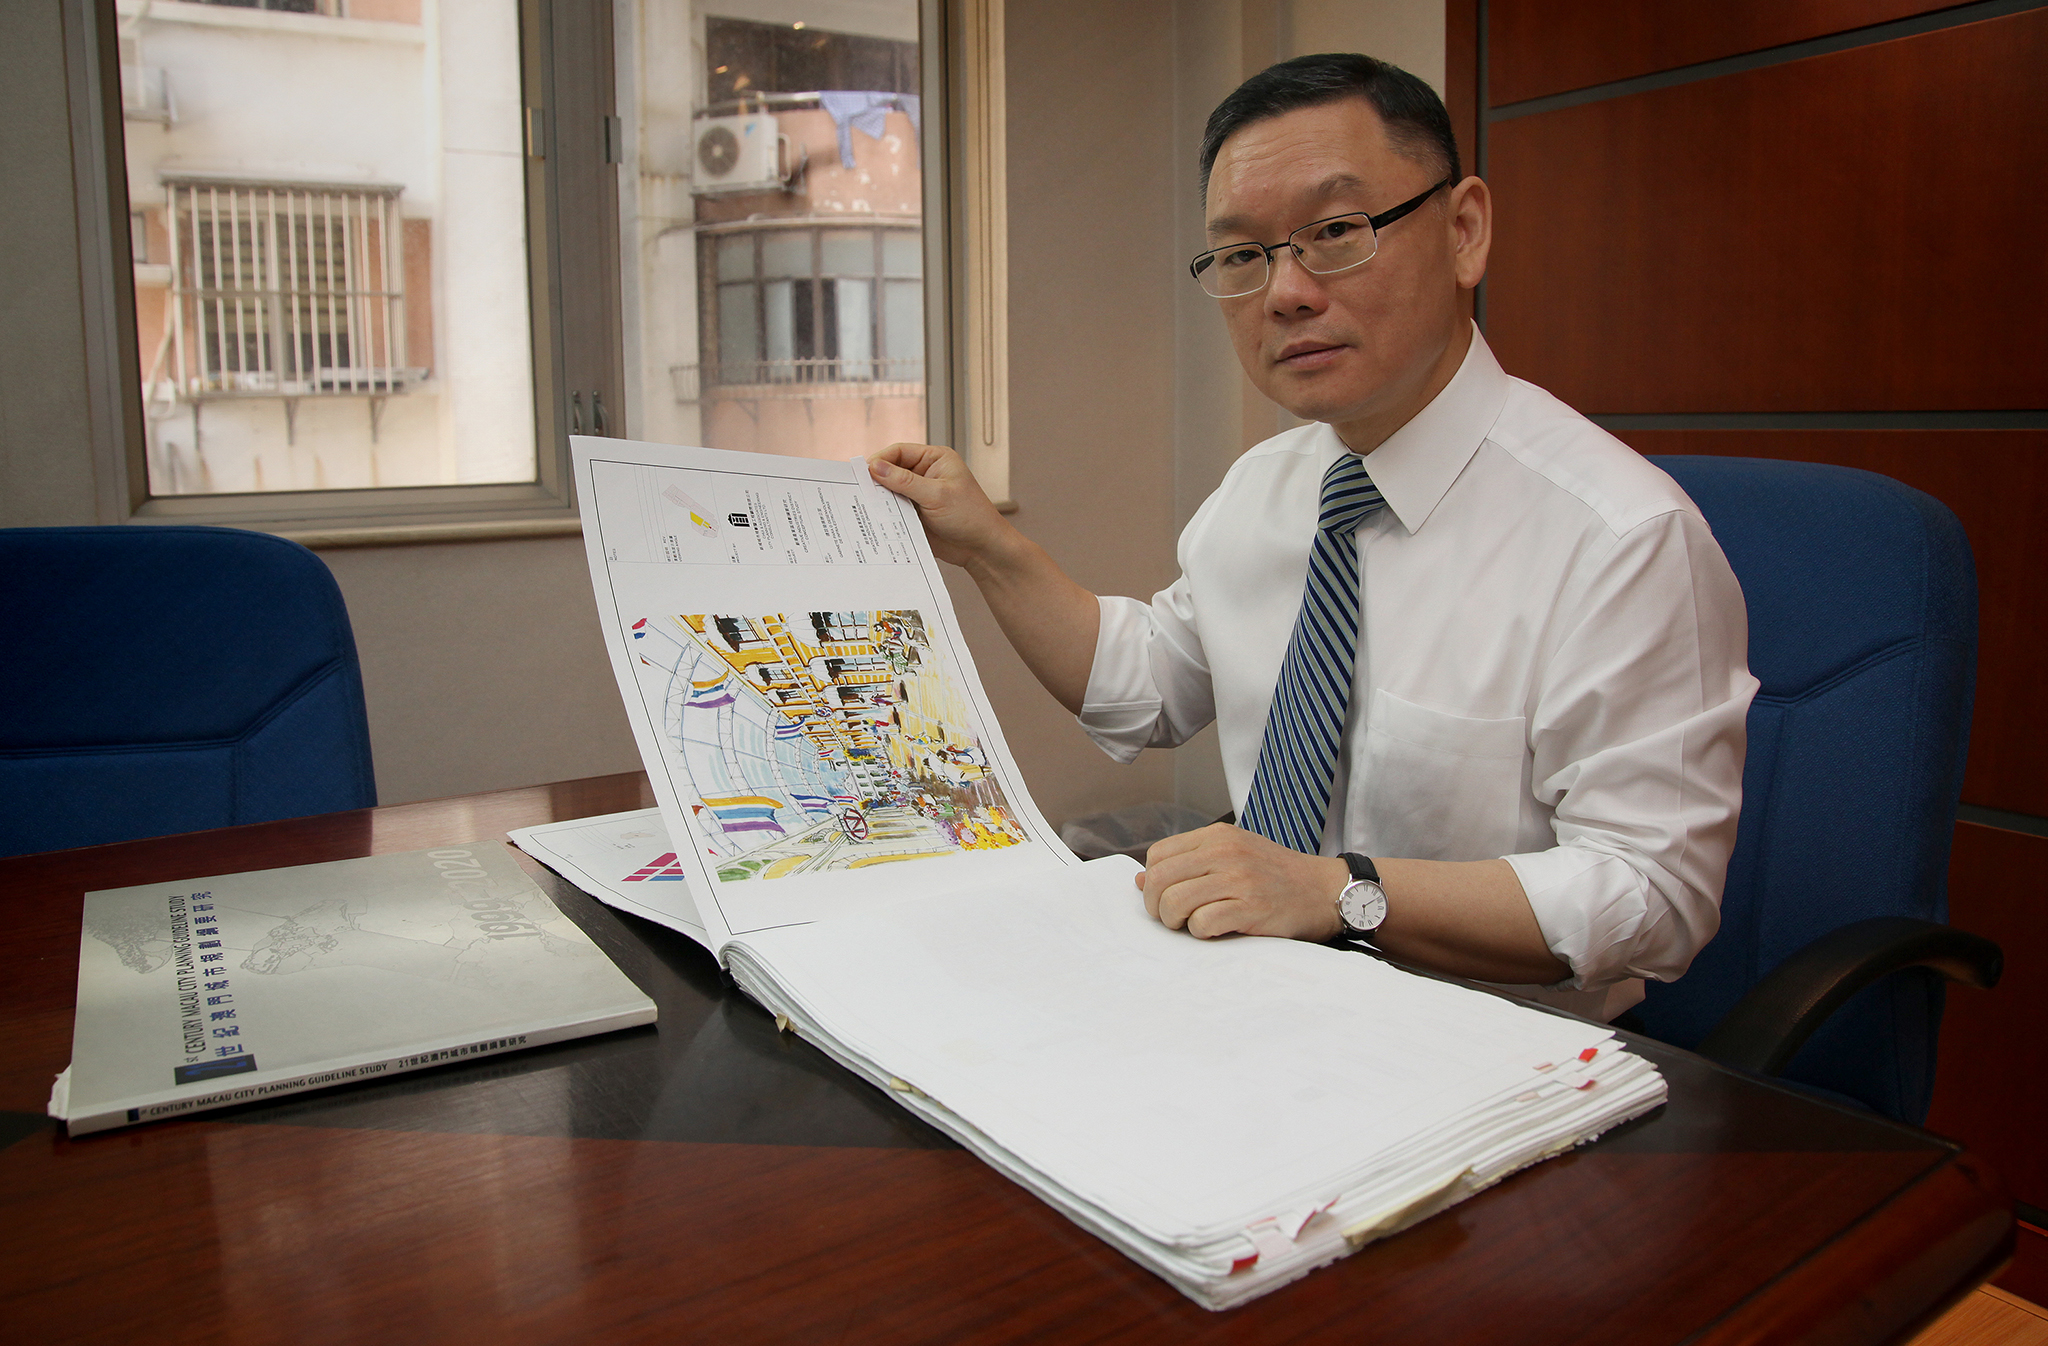 Obras | José Chui Sai Peng ganha concurso para instalações na nova prisão